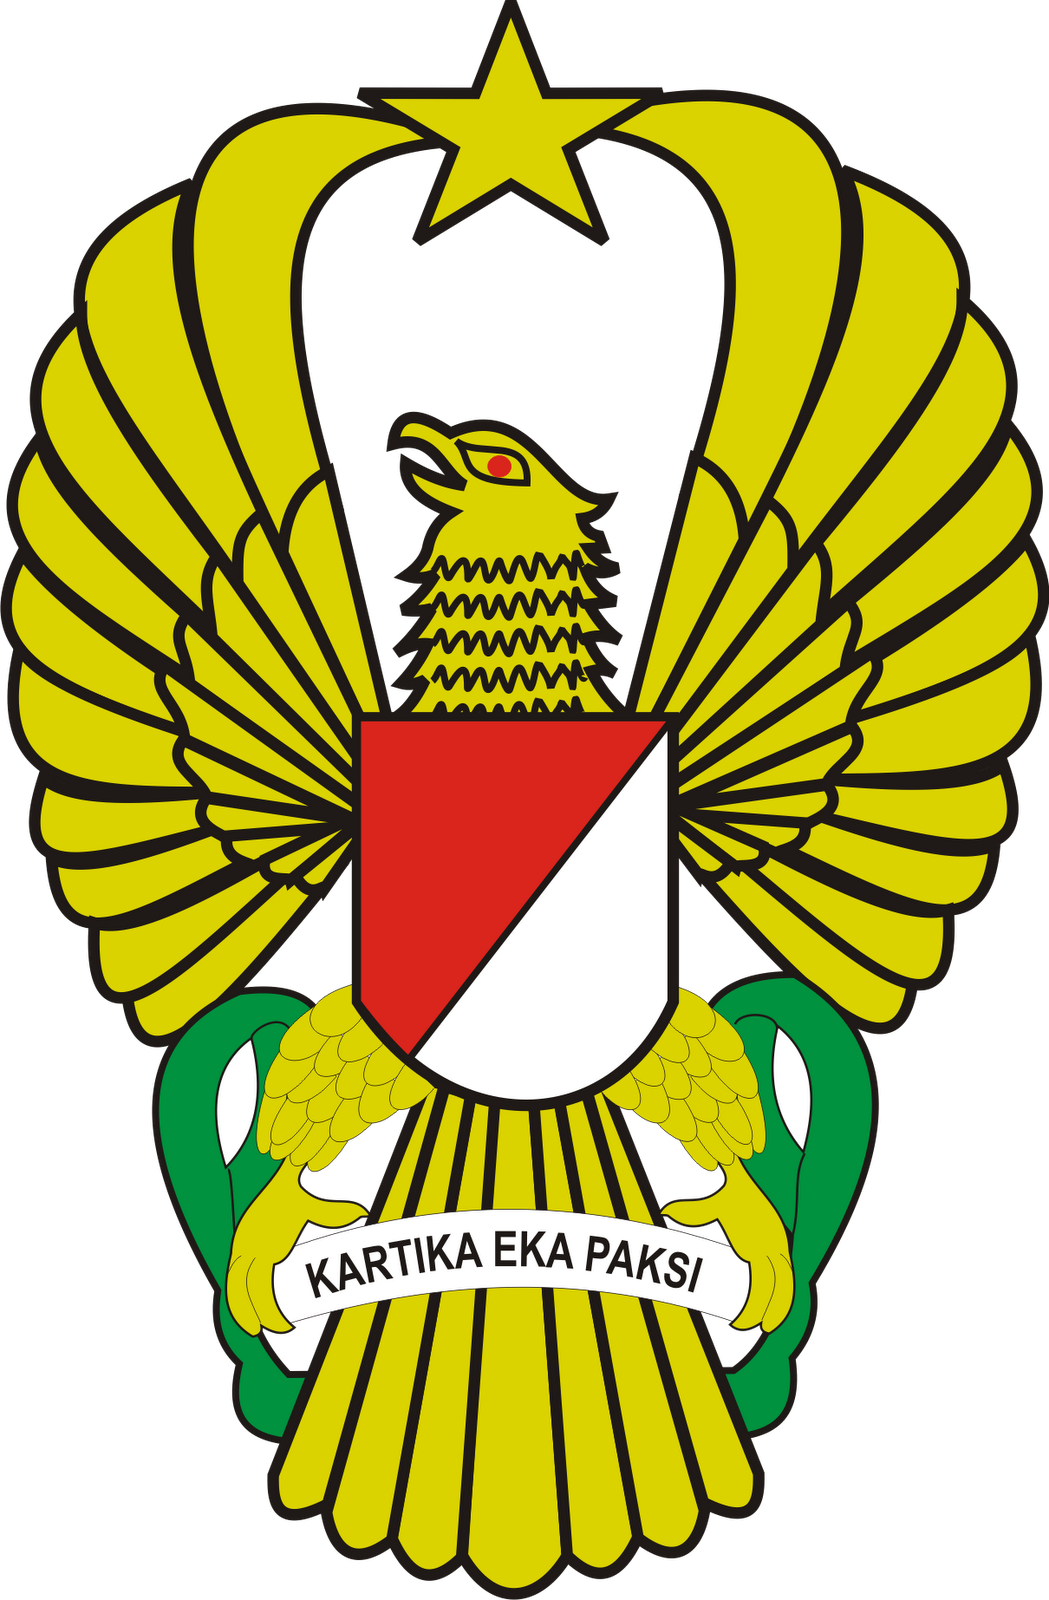  Logo  Sabhara Dan Logo  TNI AD Ardi La Madi s Blog